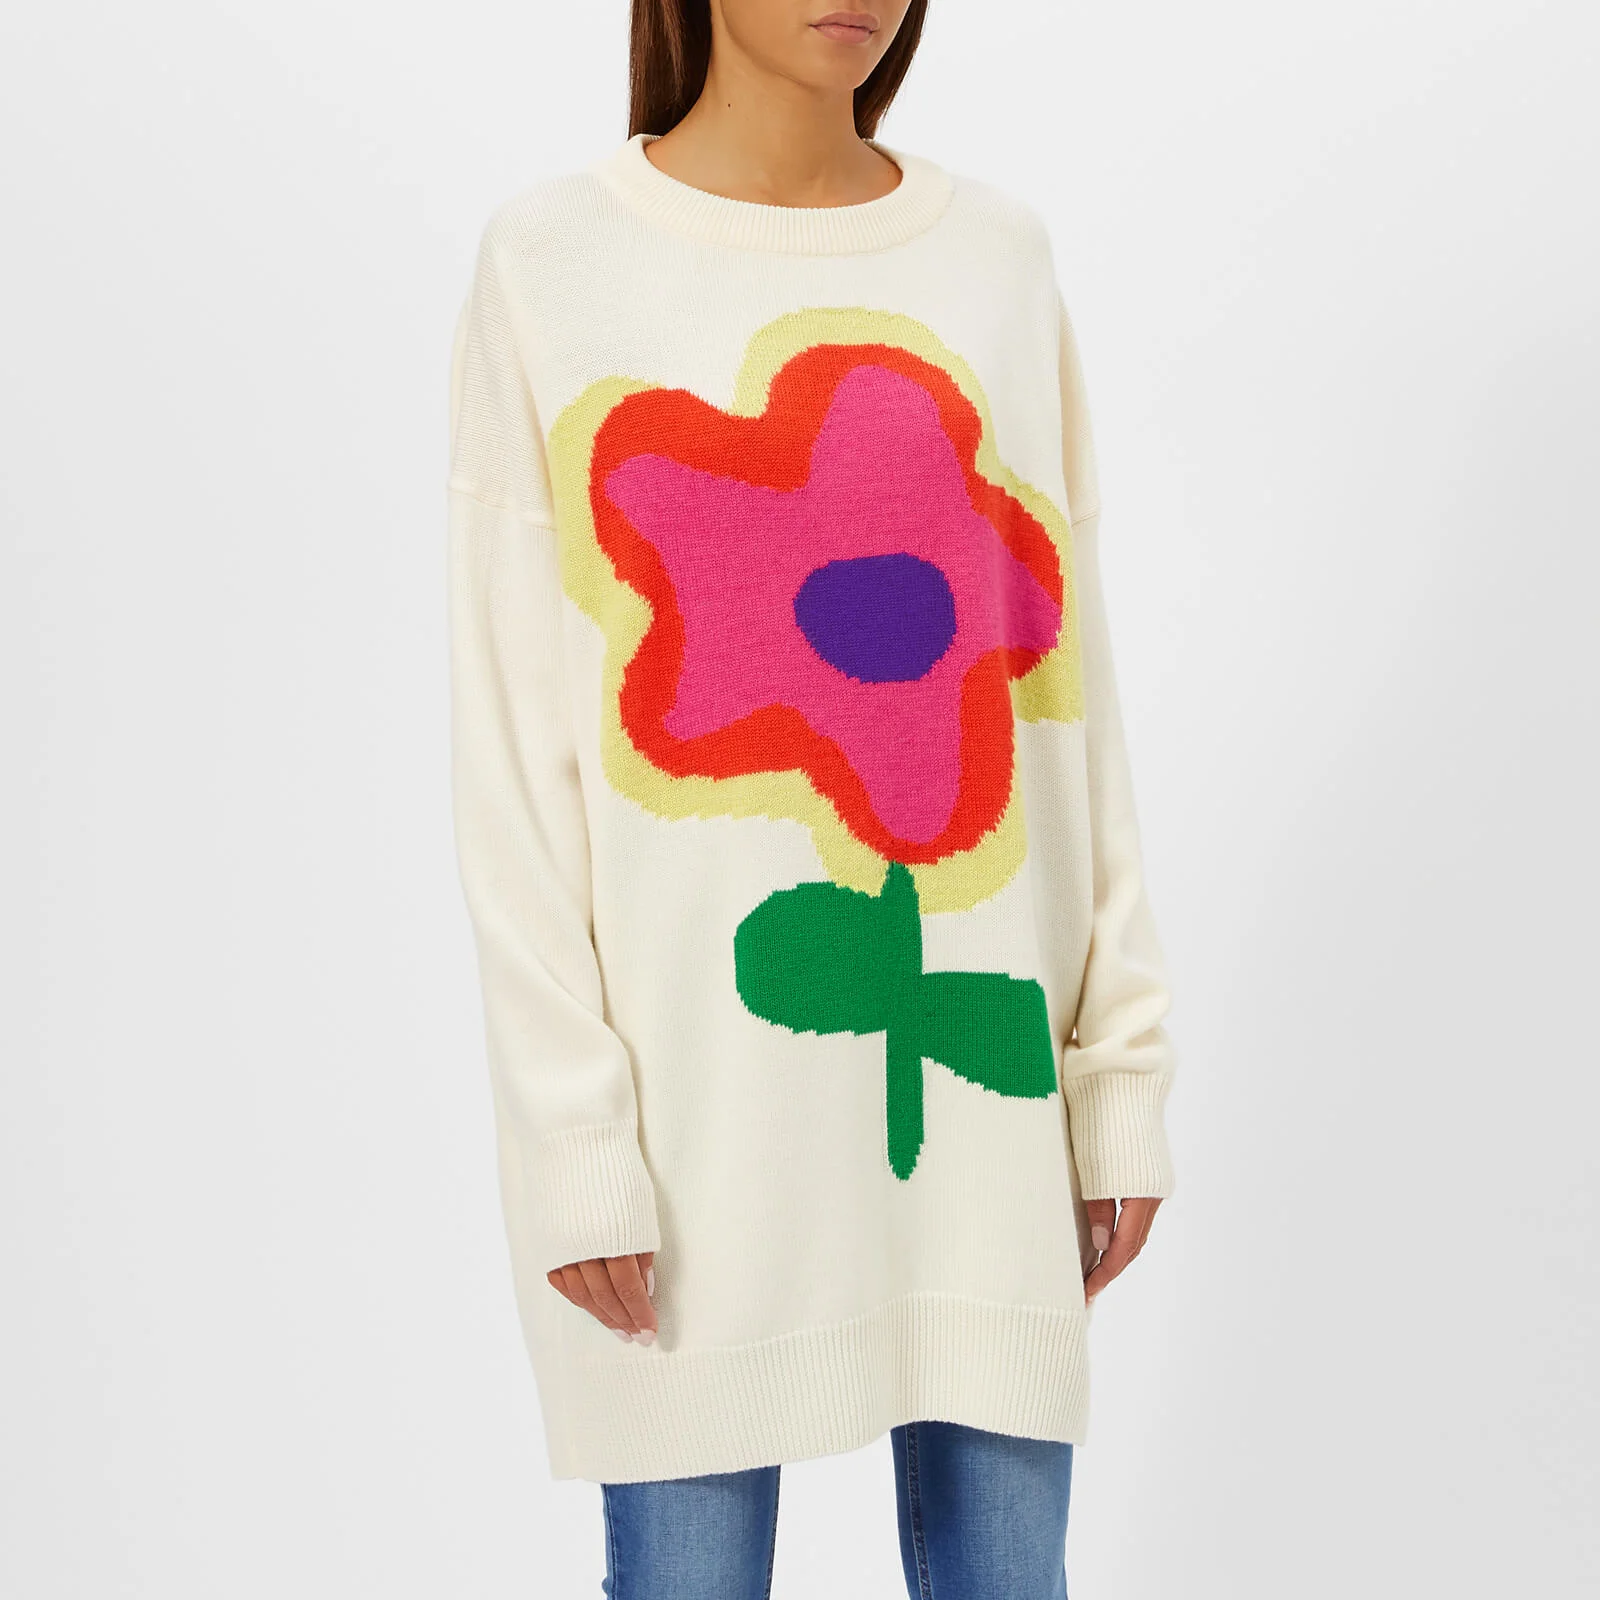 Christopher Kane Women's Jumbo Flower Intarsia Sweater - Cream Image 1